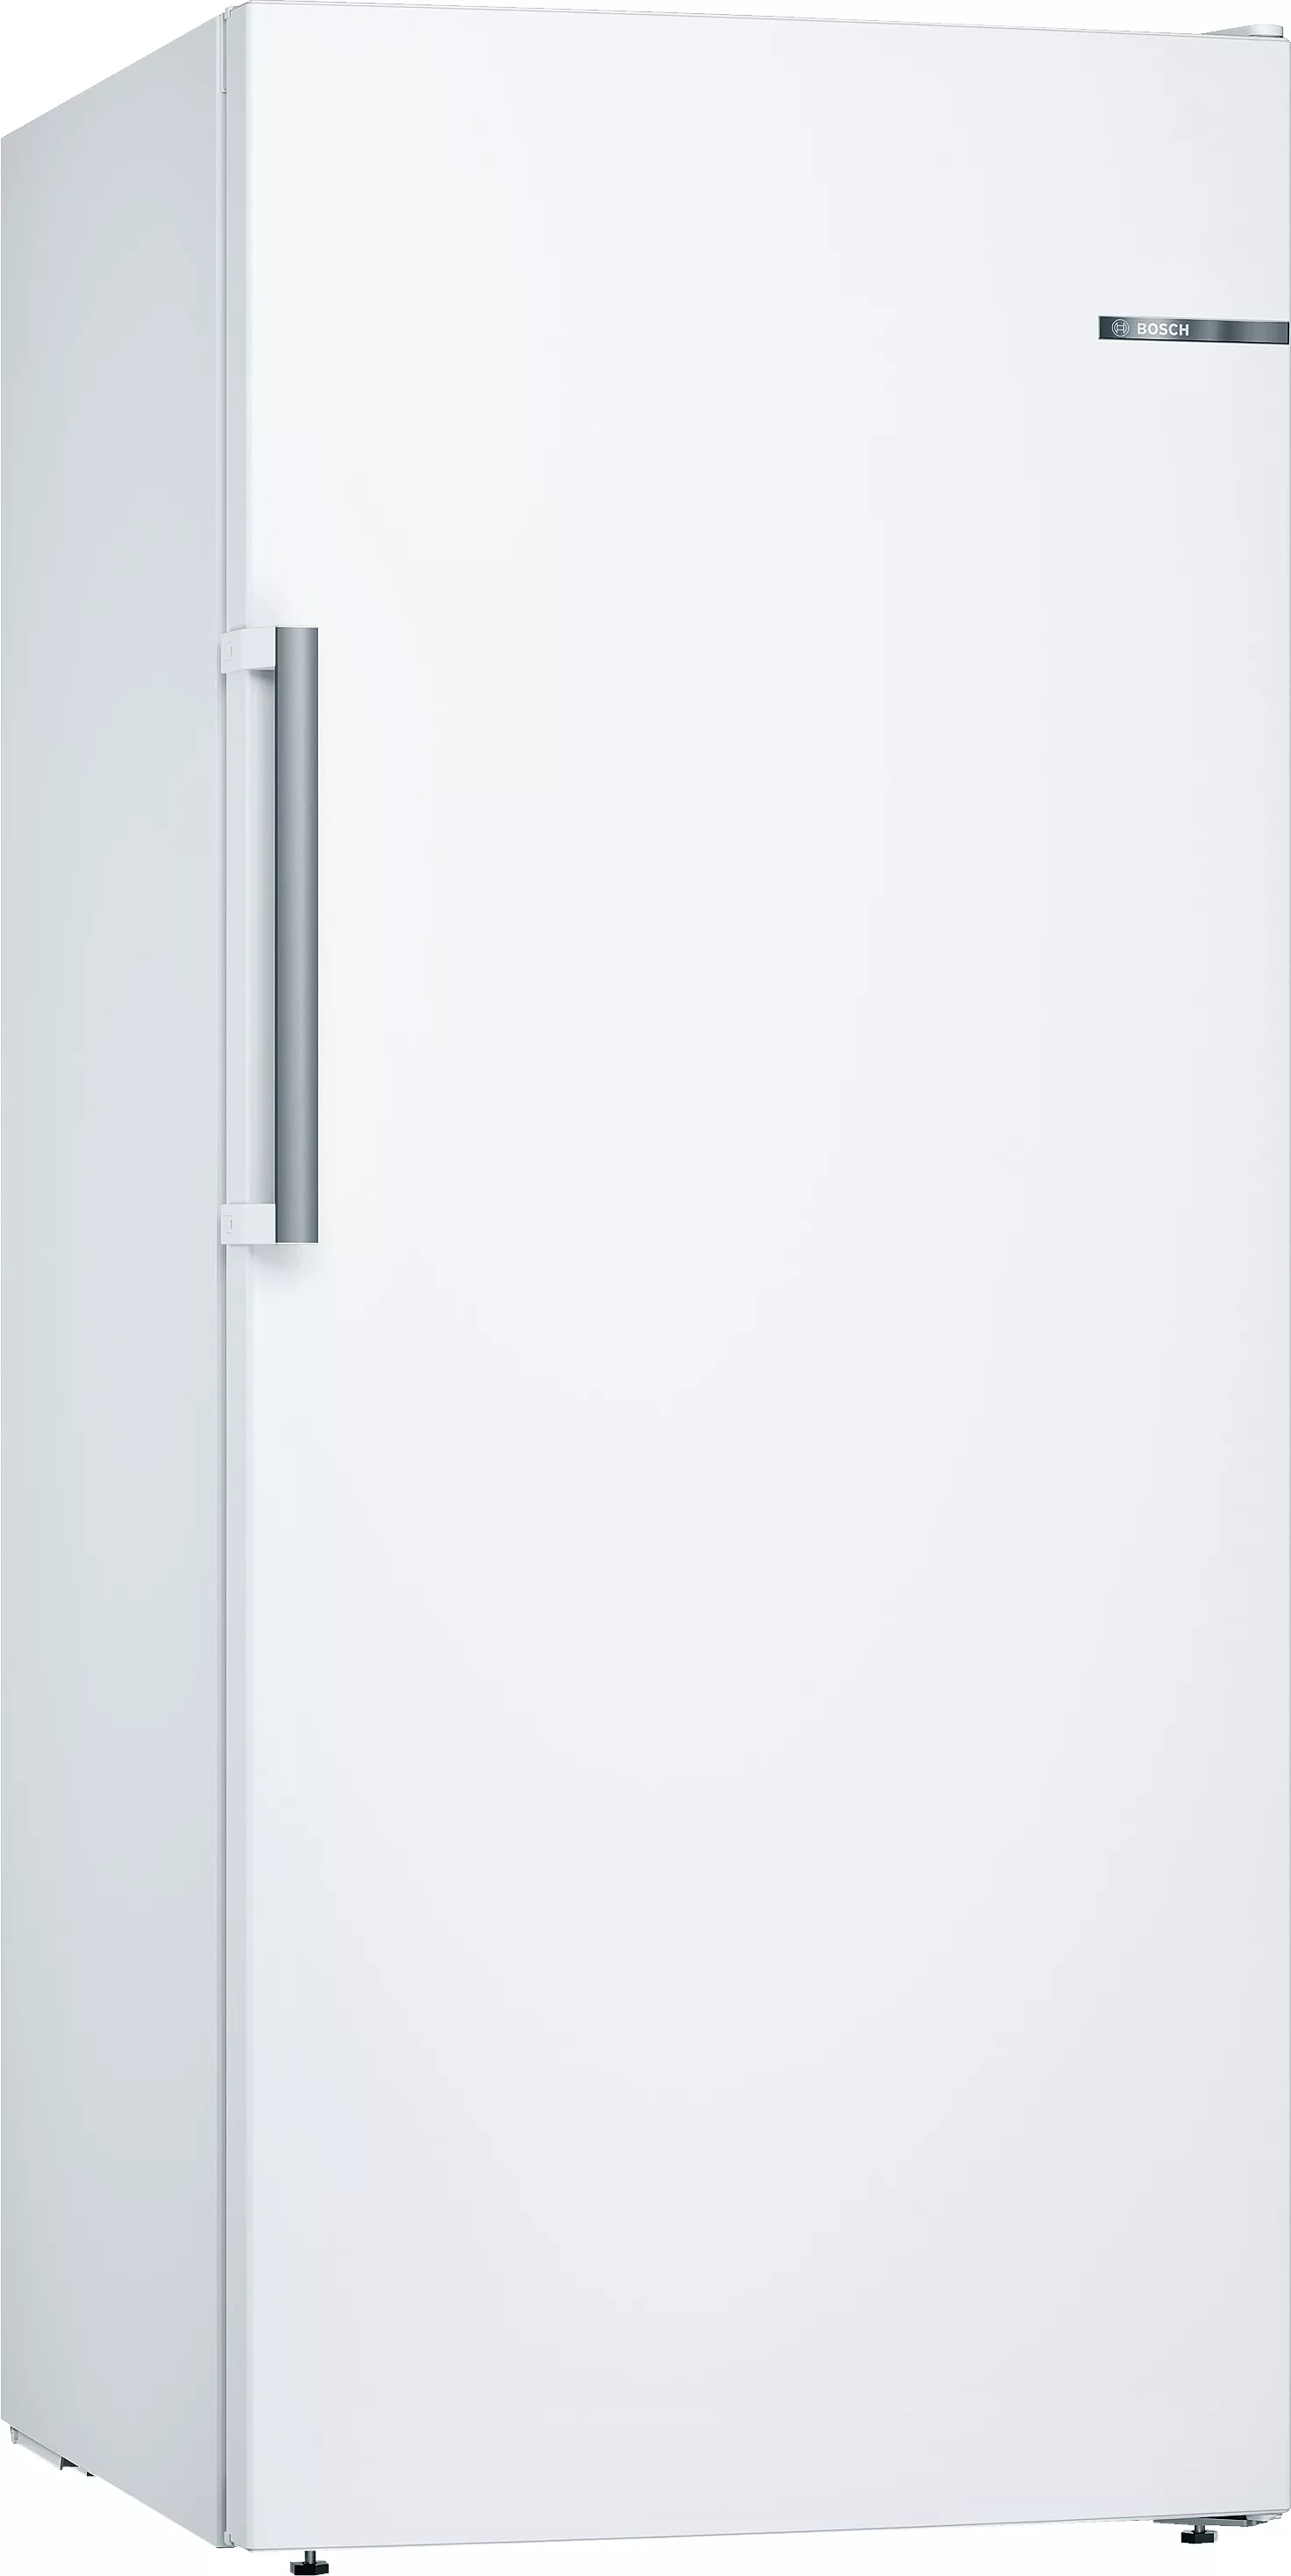 Bosch Serie 6, Freistehender Gefrierschrank, 161 x 70 cm, Weiß, GSN51AWDV